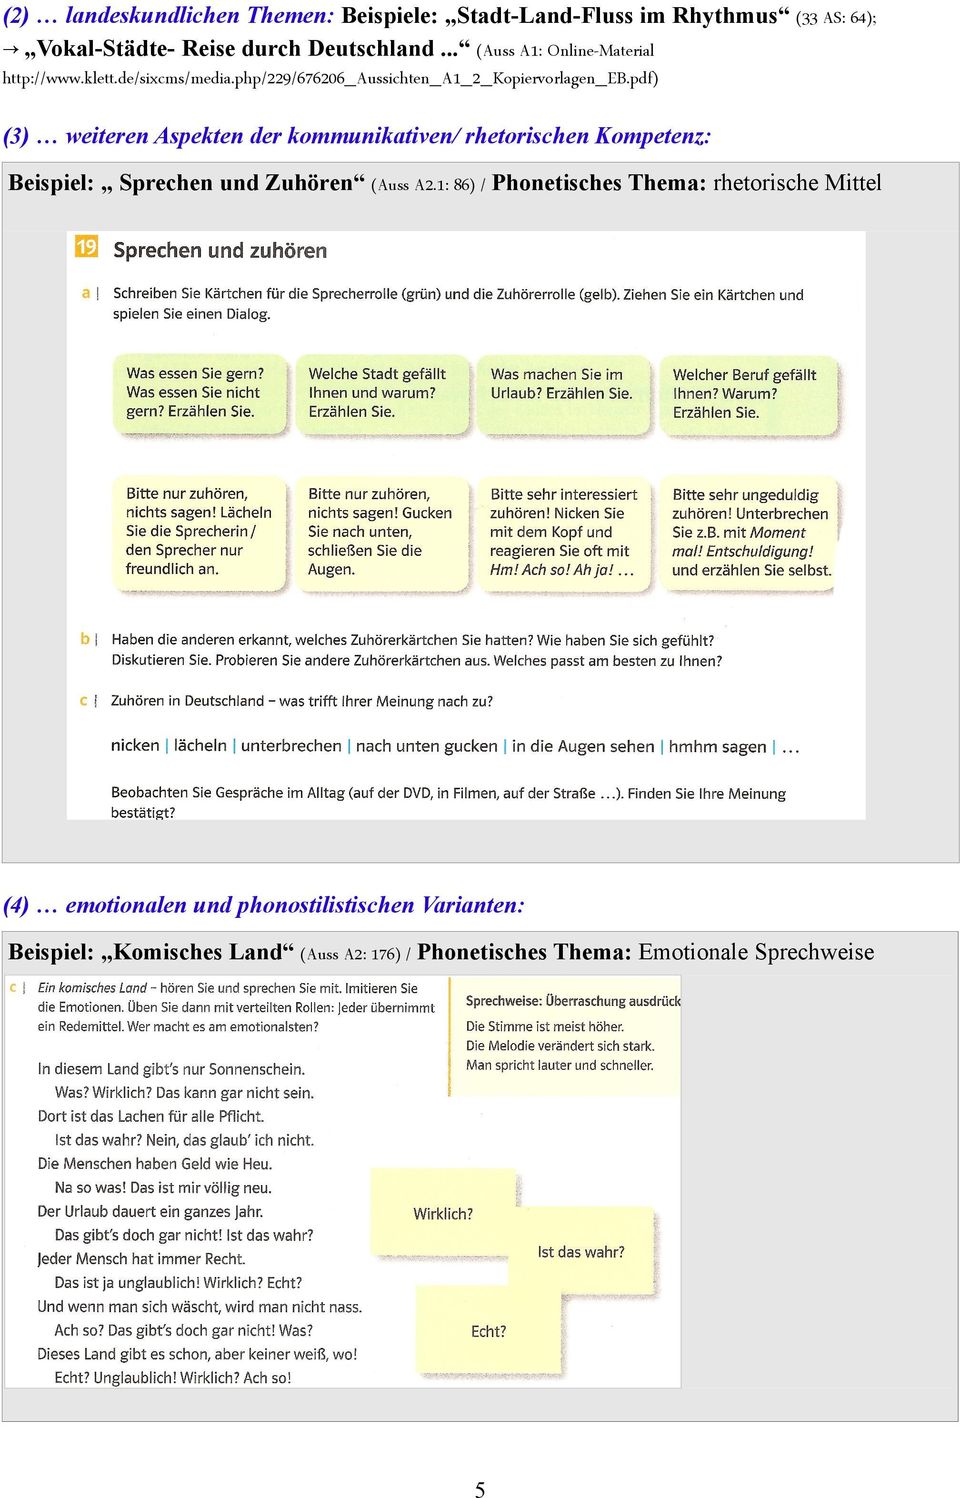 pdf) (3) weiteren Aspekten der kommunikativen/ rhetorischen Kompetenz: Beispiel: Sprechen und Zuhören (Auss A2.